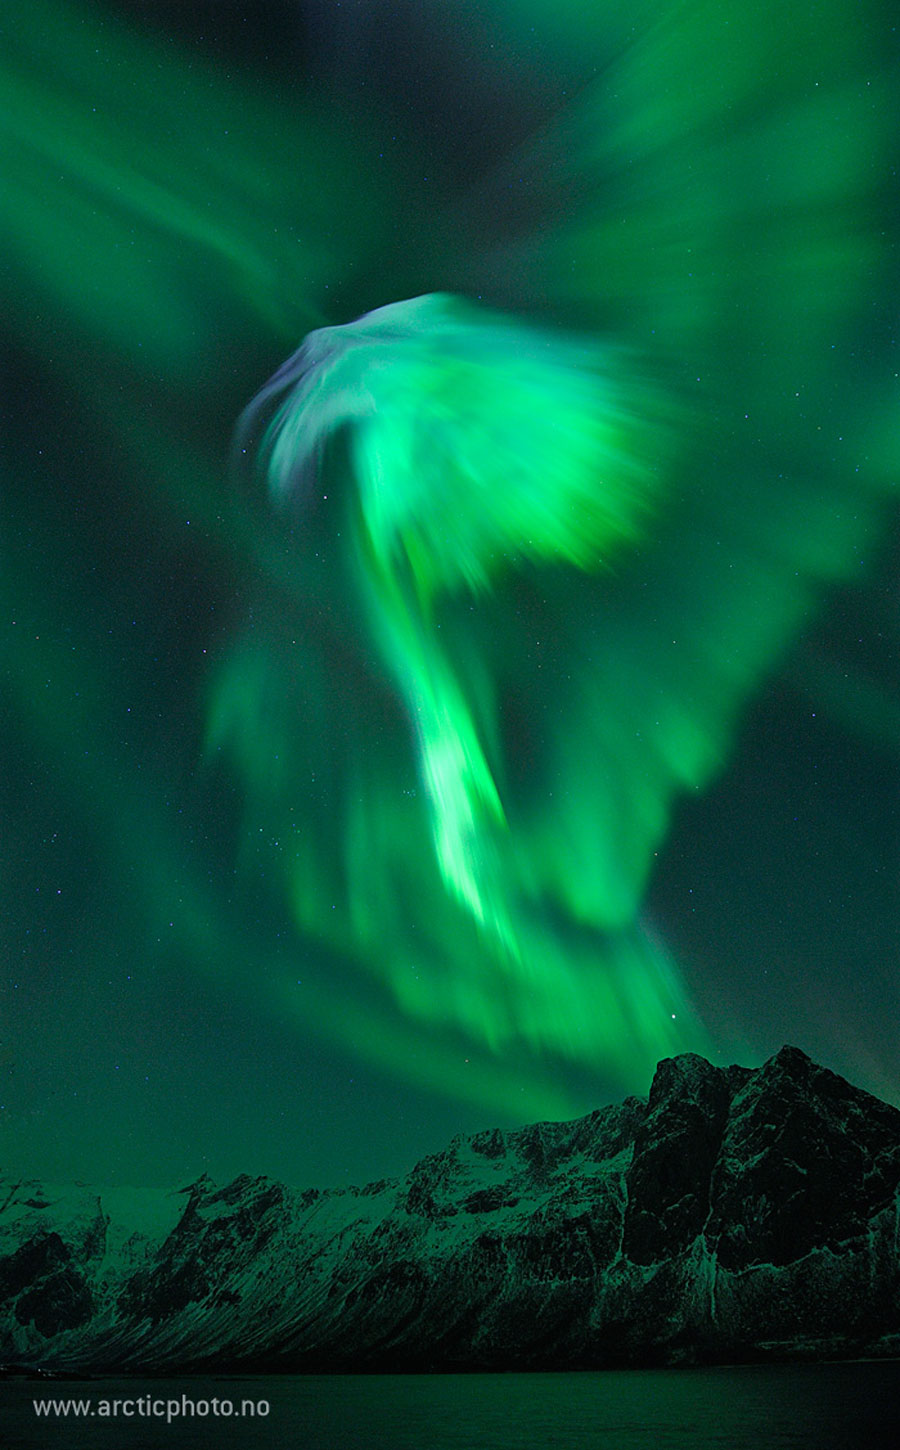  2019年8月2日<br />挪威上空的鷹狀極光 <br />影像提供與版權: Bjørn Jørgensen <br />說明: 天空中那是什麼？極光是也。 在2012年拍下這幅影像的5天前，太陽發生了一次大規模的日冕物質拋射，把一大團高速運動的電子、質子與離子灑向地球。 雖然這團物質雲大多從地球上方掠過，但仍有部分撞到我們地球的磁層，造成北半球高緯度地區都得見的精采極光。 這張攝於挪威．Grotfjord村的主題影像，呈現了其中一個特別美麗的極光冕。 <br /> 